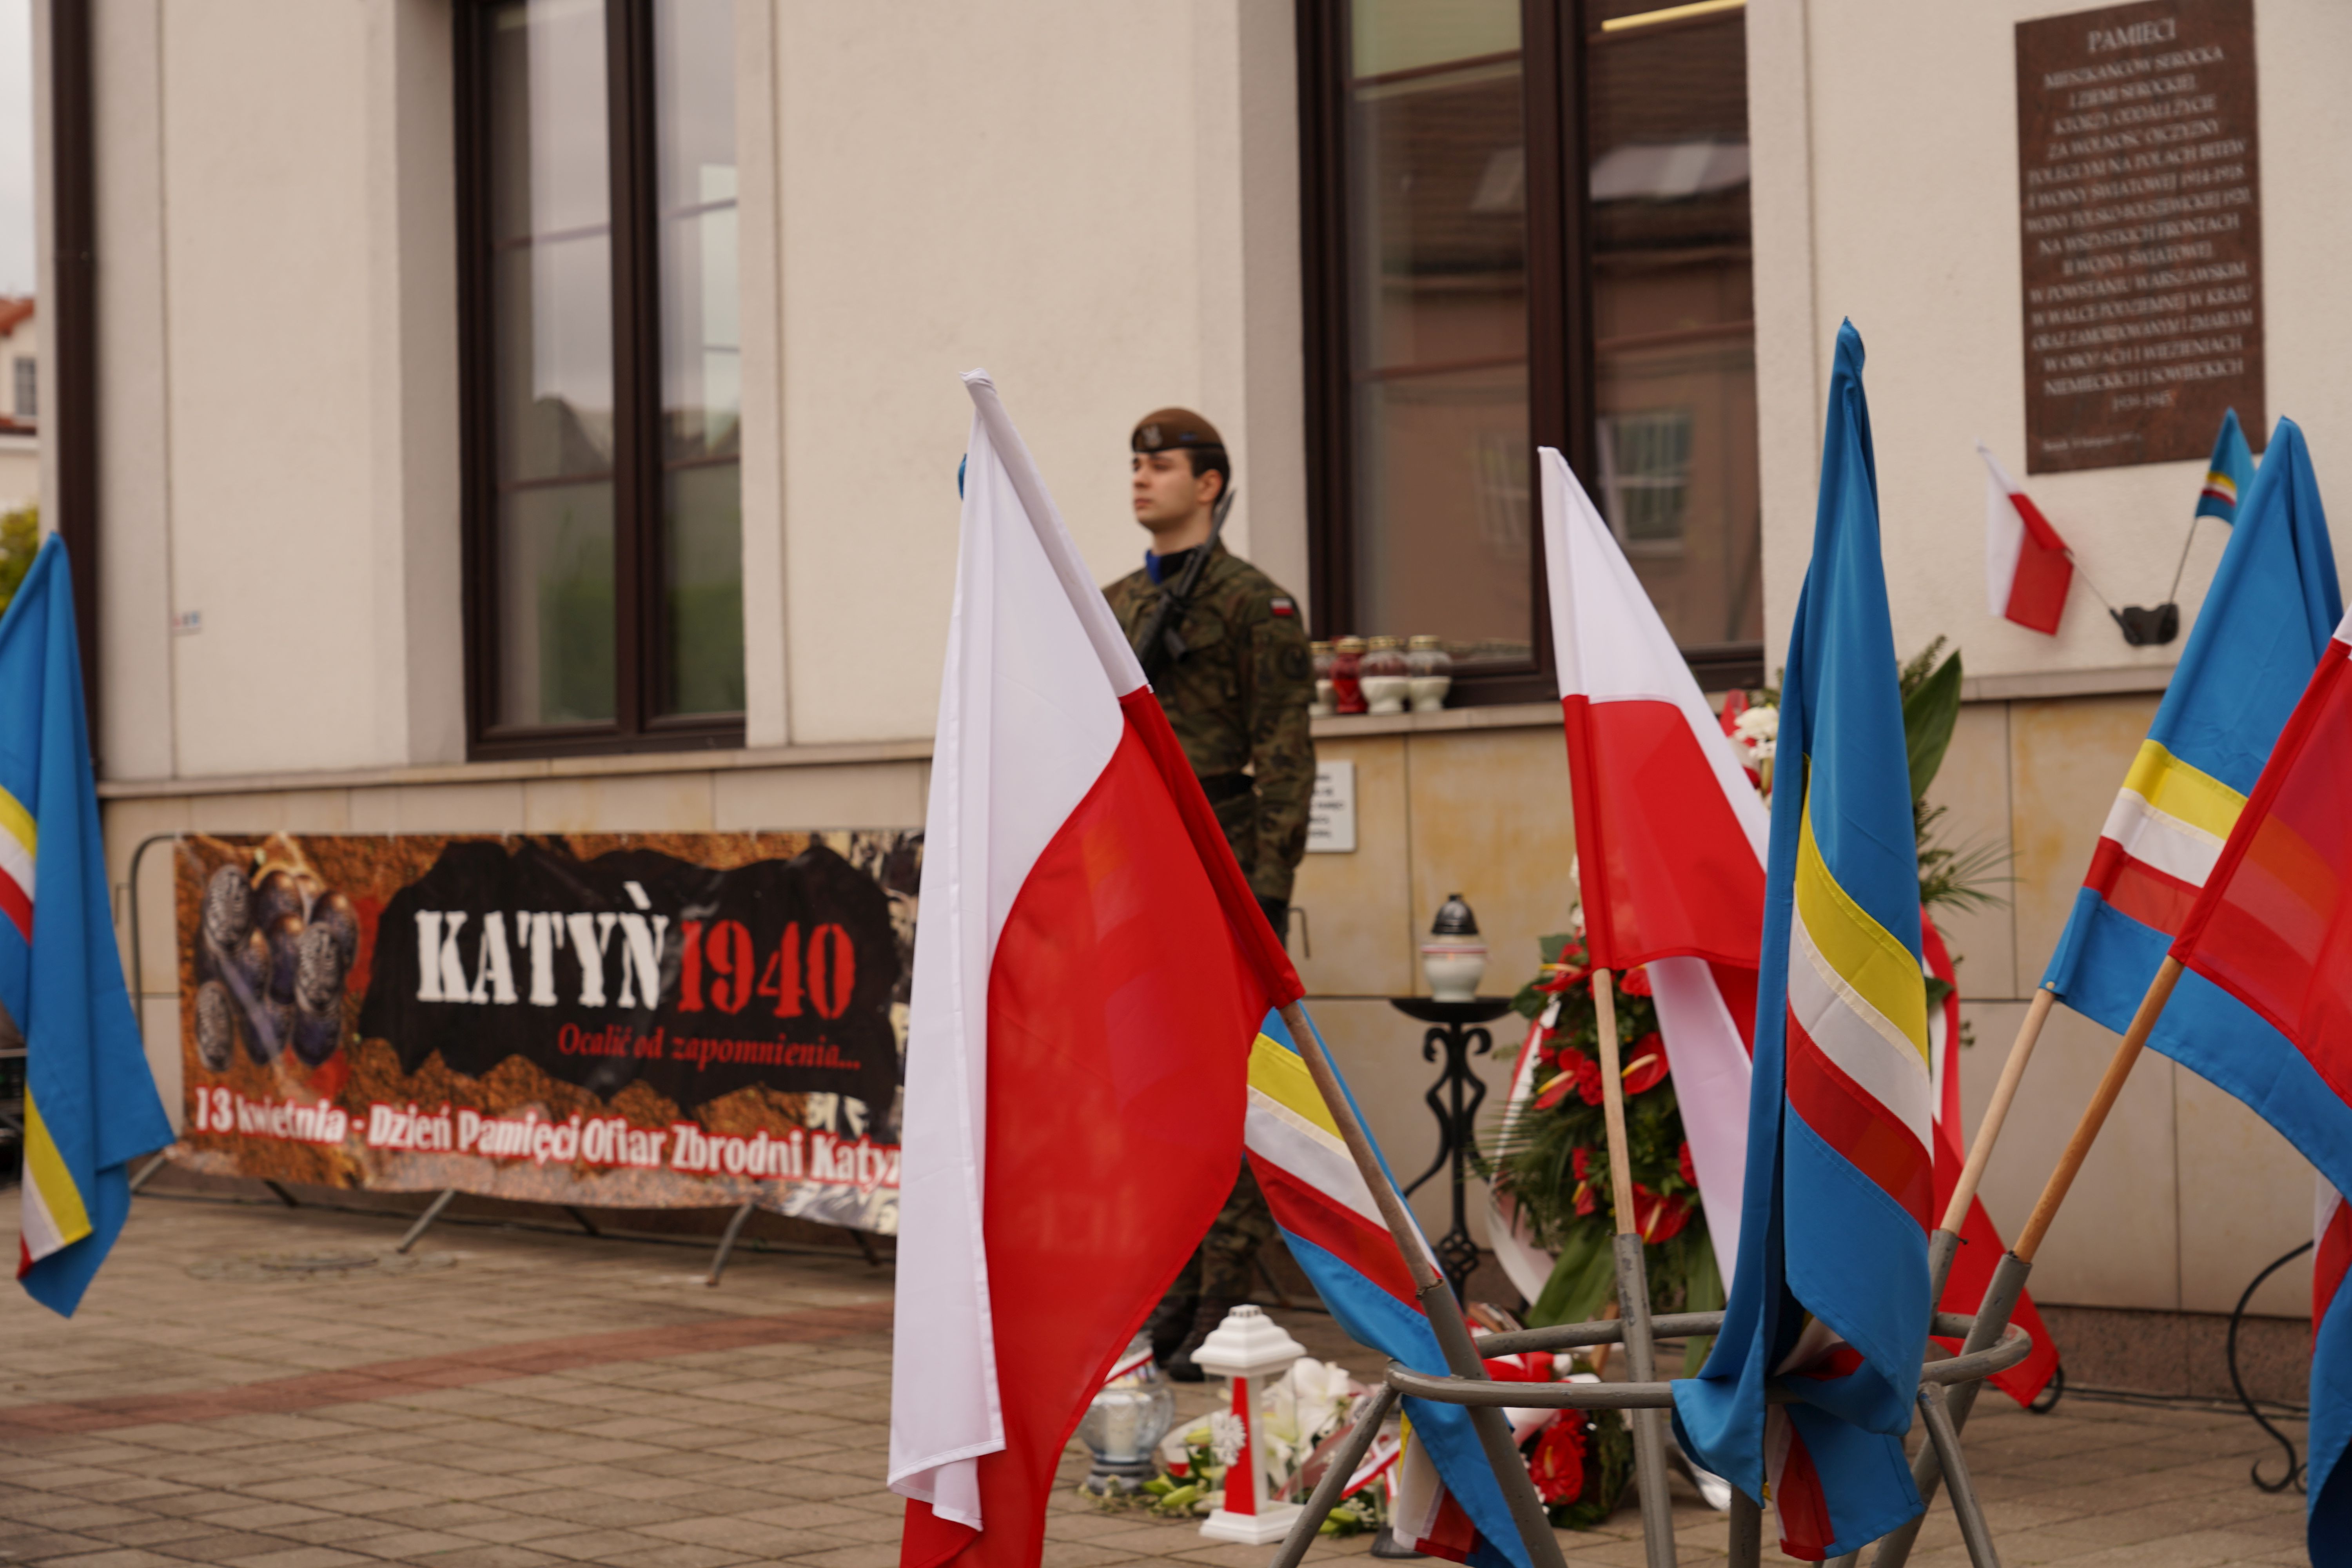 Pamięci Ofiarom Zbrodni Katyńskiej